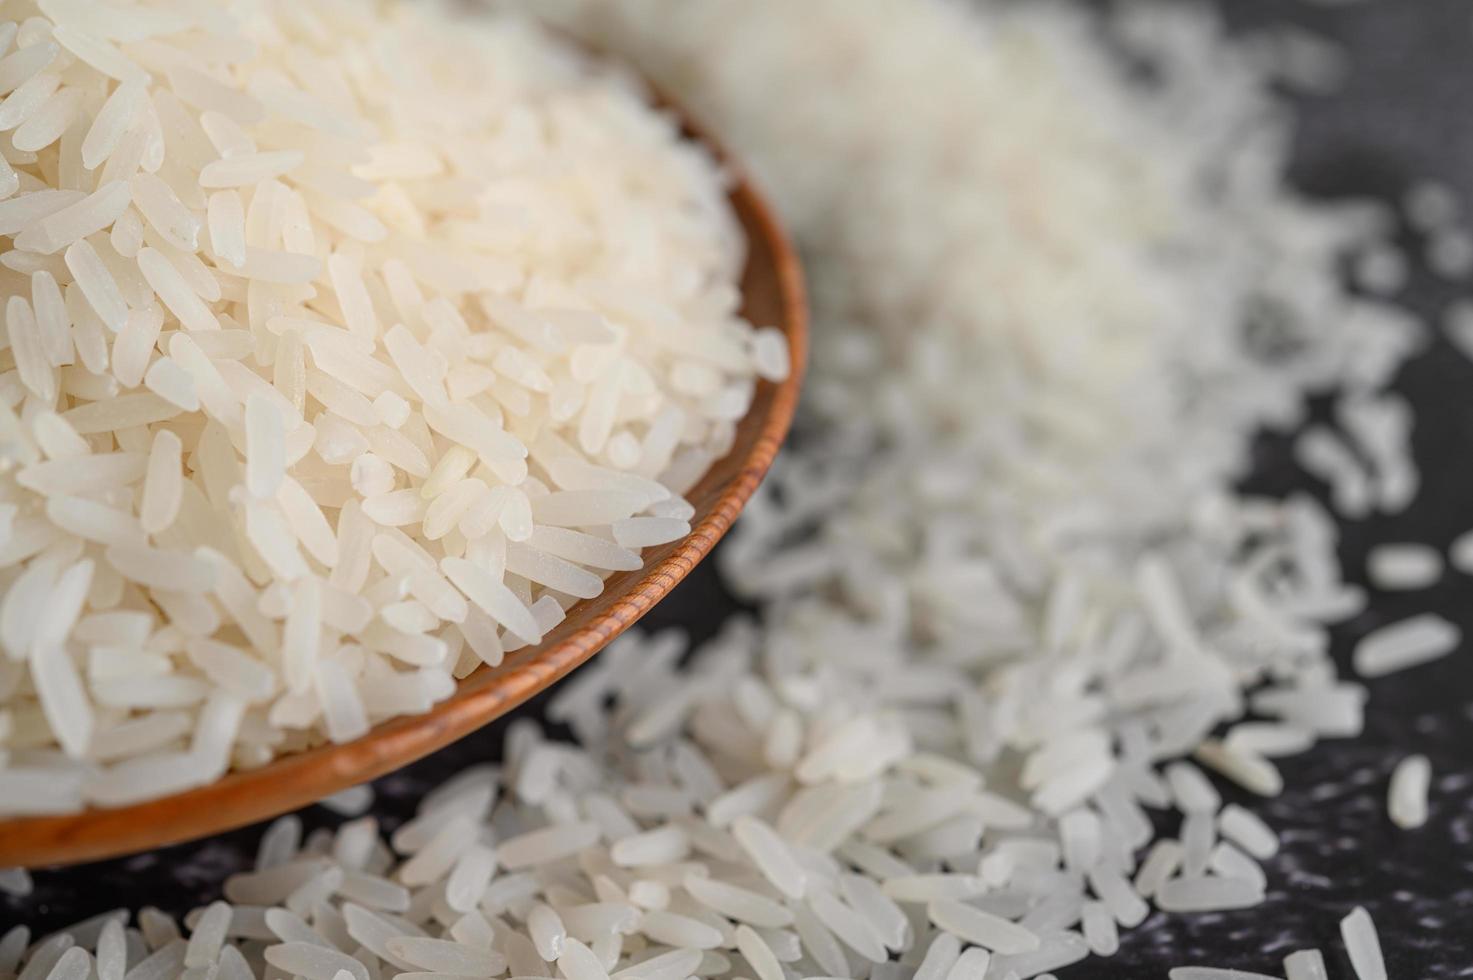 Nahaufnahme von gemahlenem Reis in Schalen foto